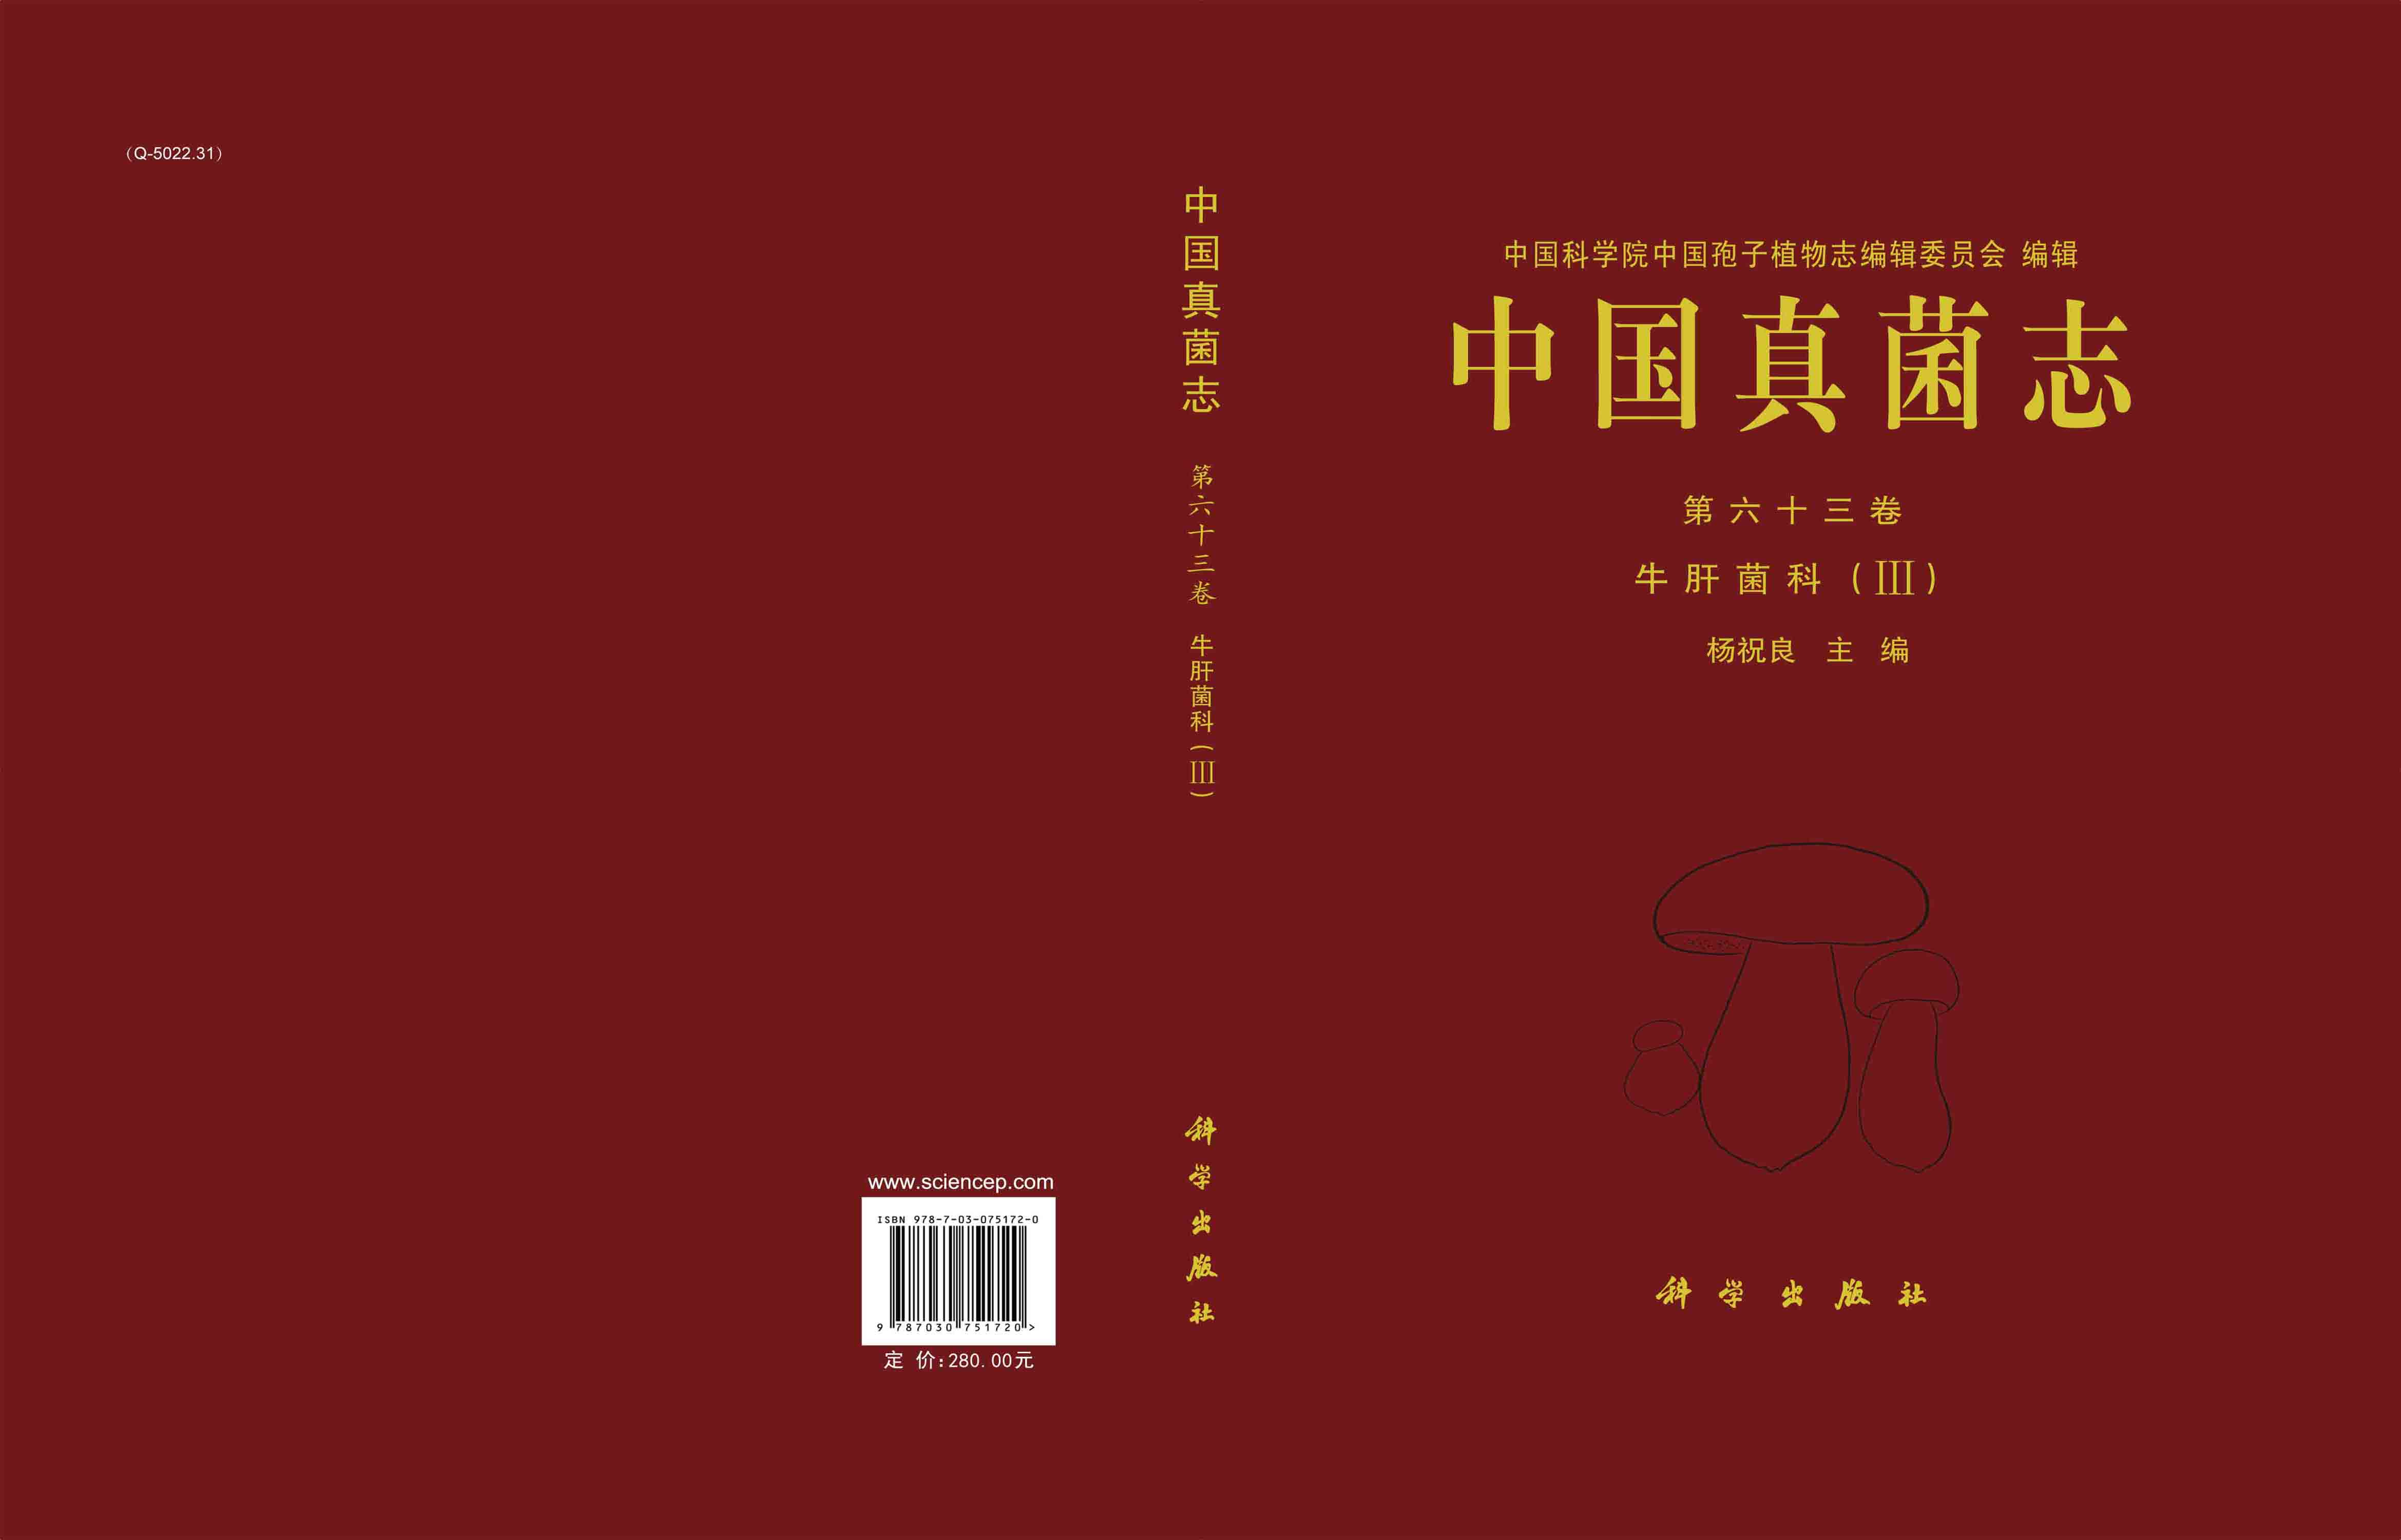 中国真菌志 第六十三卷 牛肝菌科 （III）